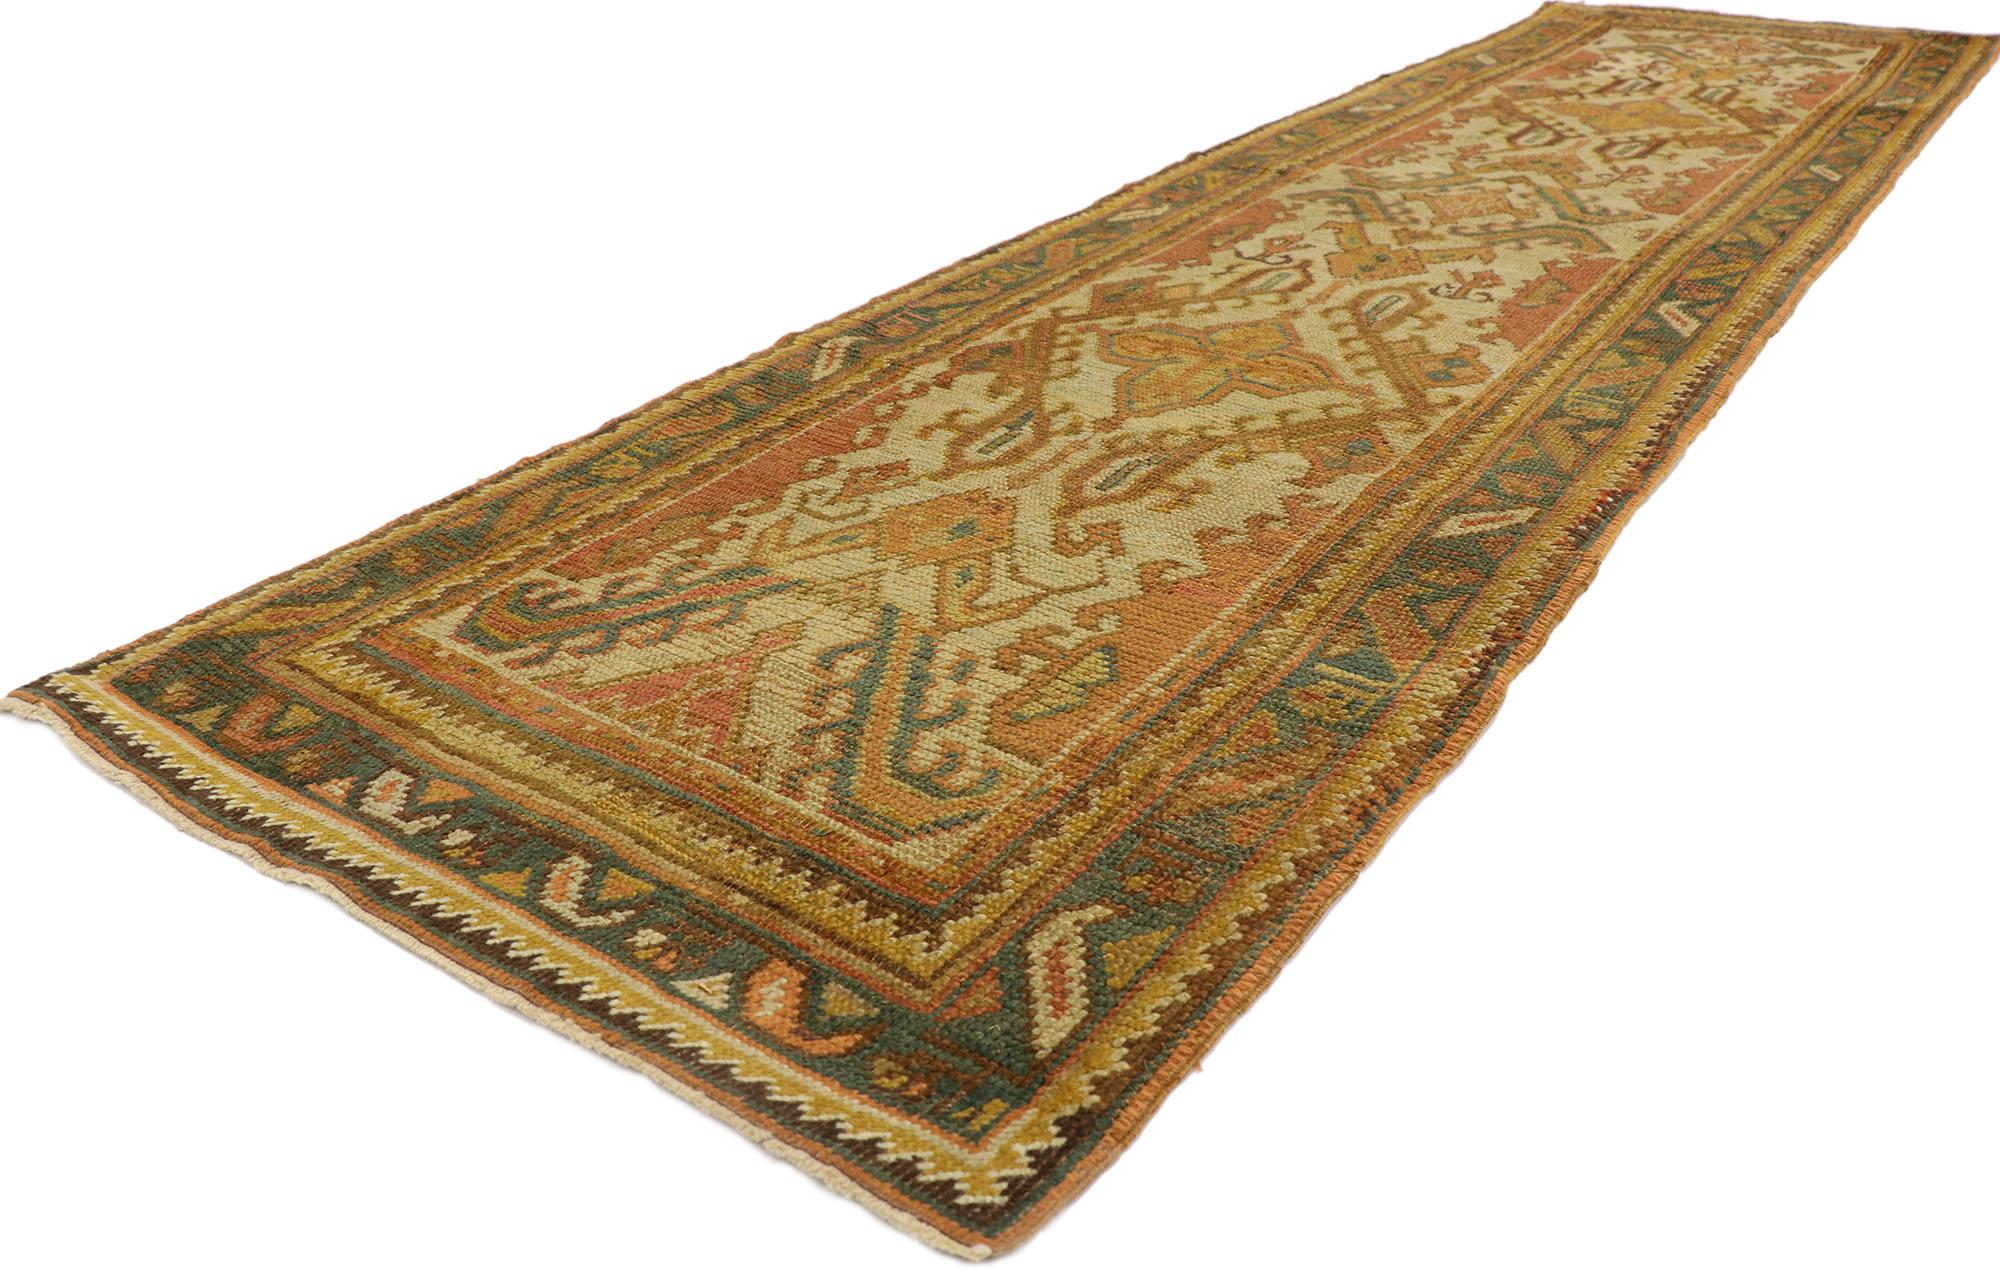 53669 Antiker türkischer Oushak-Teppich, 02'11 x 11'03.
Treten Sie ein in eine Welt von zeitloser Schönheit und mediterranem Flair mit diesem handgeknüpften Läufer aus antiker türkischer Oushak-Wolle. Die komplizierten botanischen Designs und die